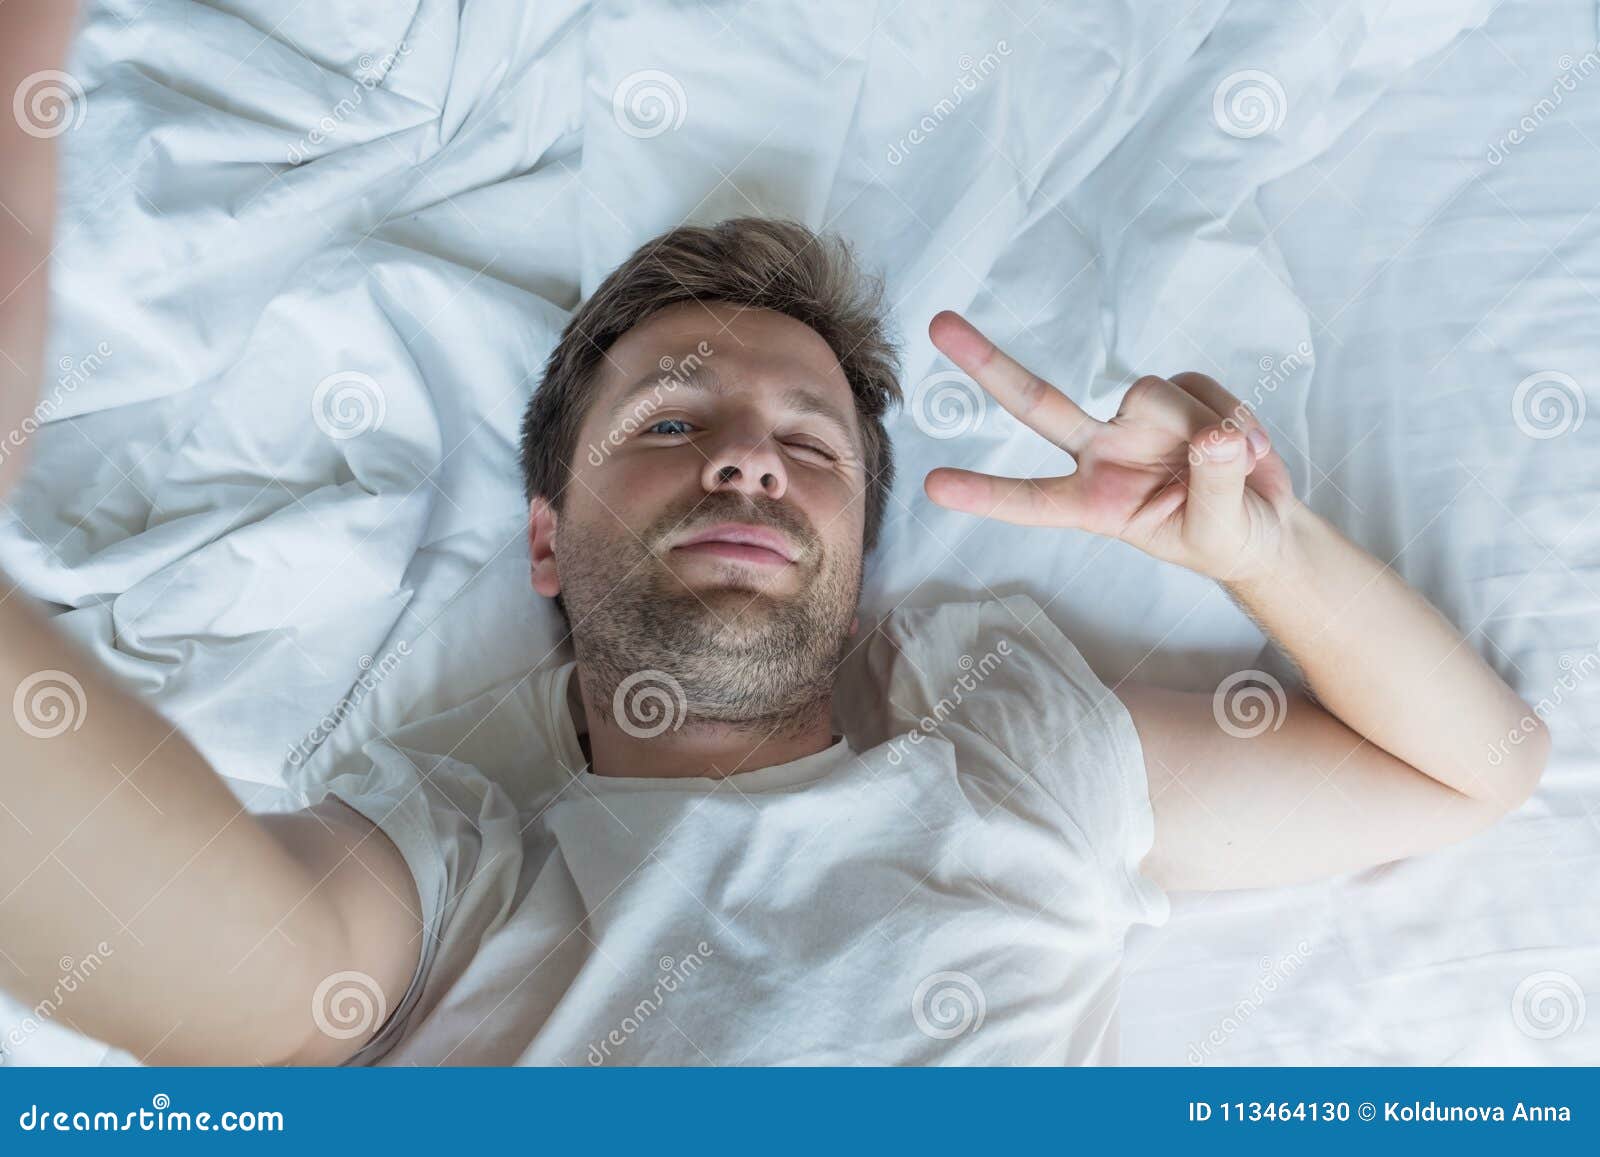 White men in bed